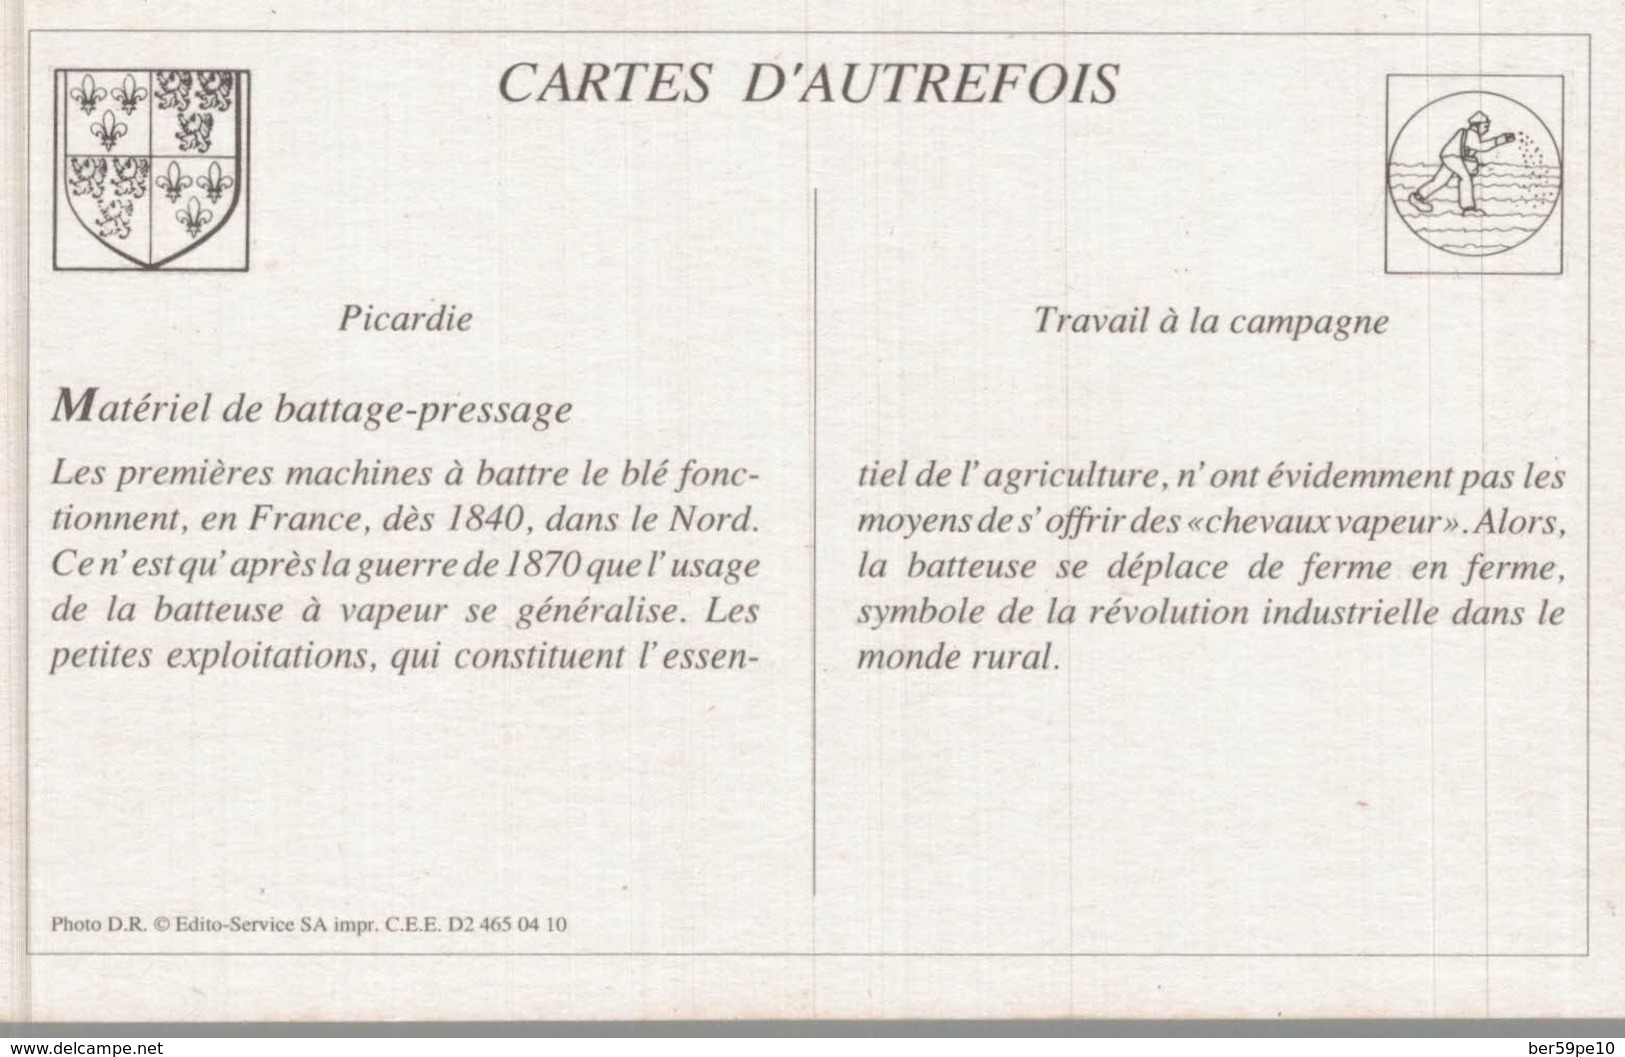 CARTES D'AUTREFOIS  TRAVAIL A LA CAMPAGNE PICARDIE  MATERIEL DE BATTAGE-PRESSAGE - Picardie